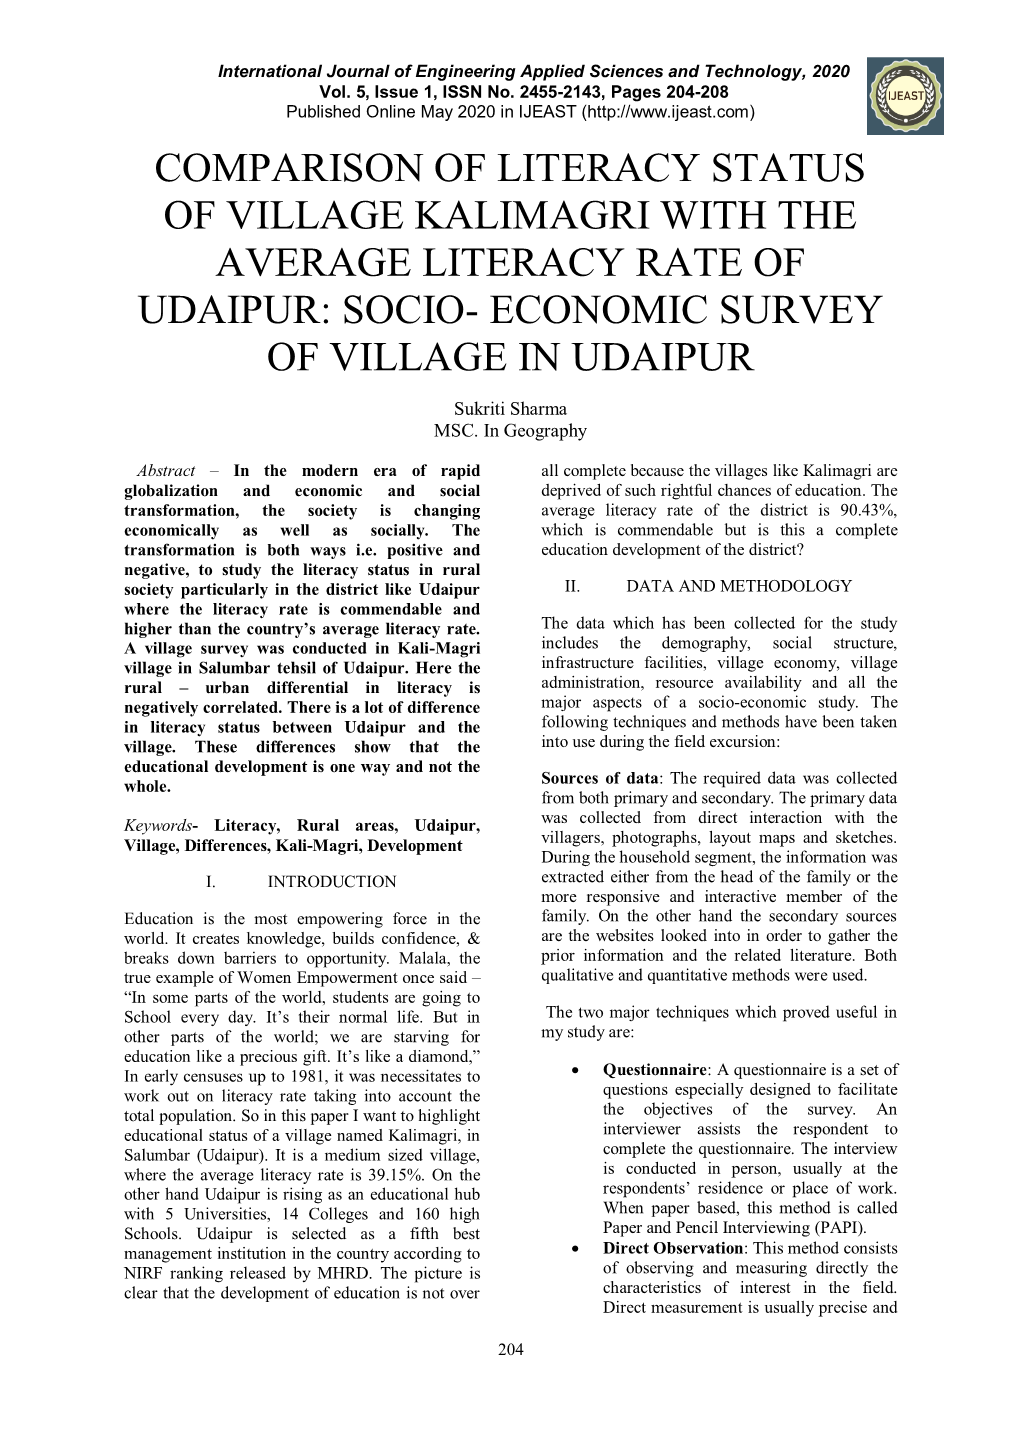 Socio- Economic Survey of Village in Udaipur